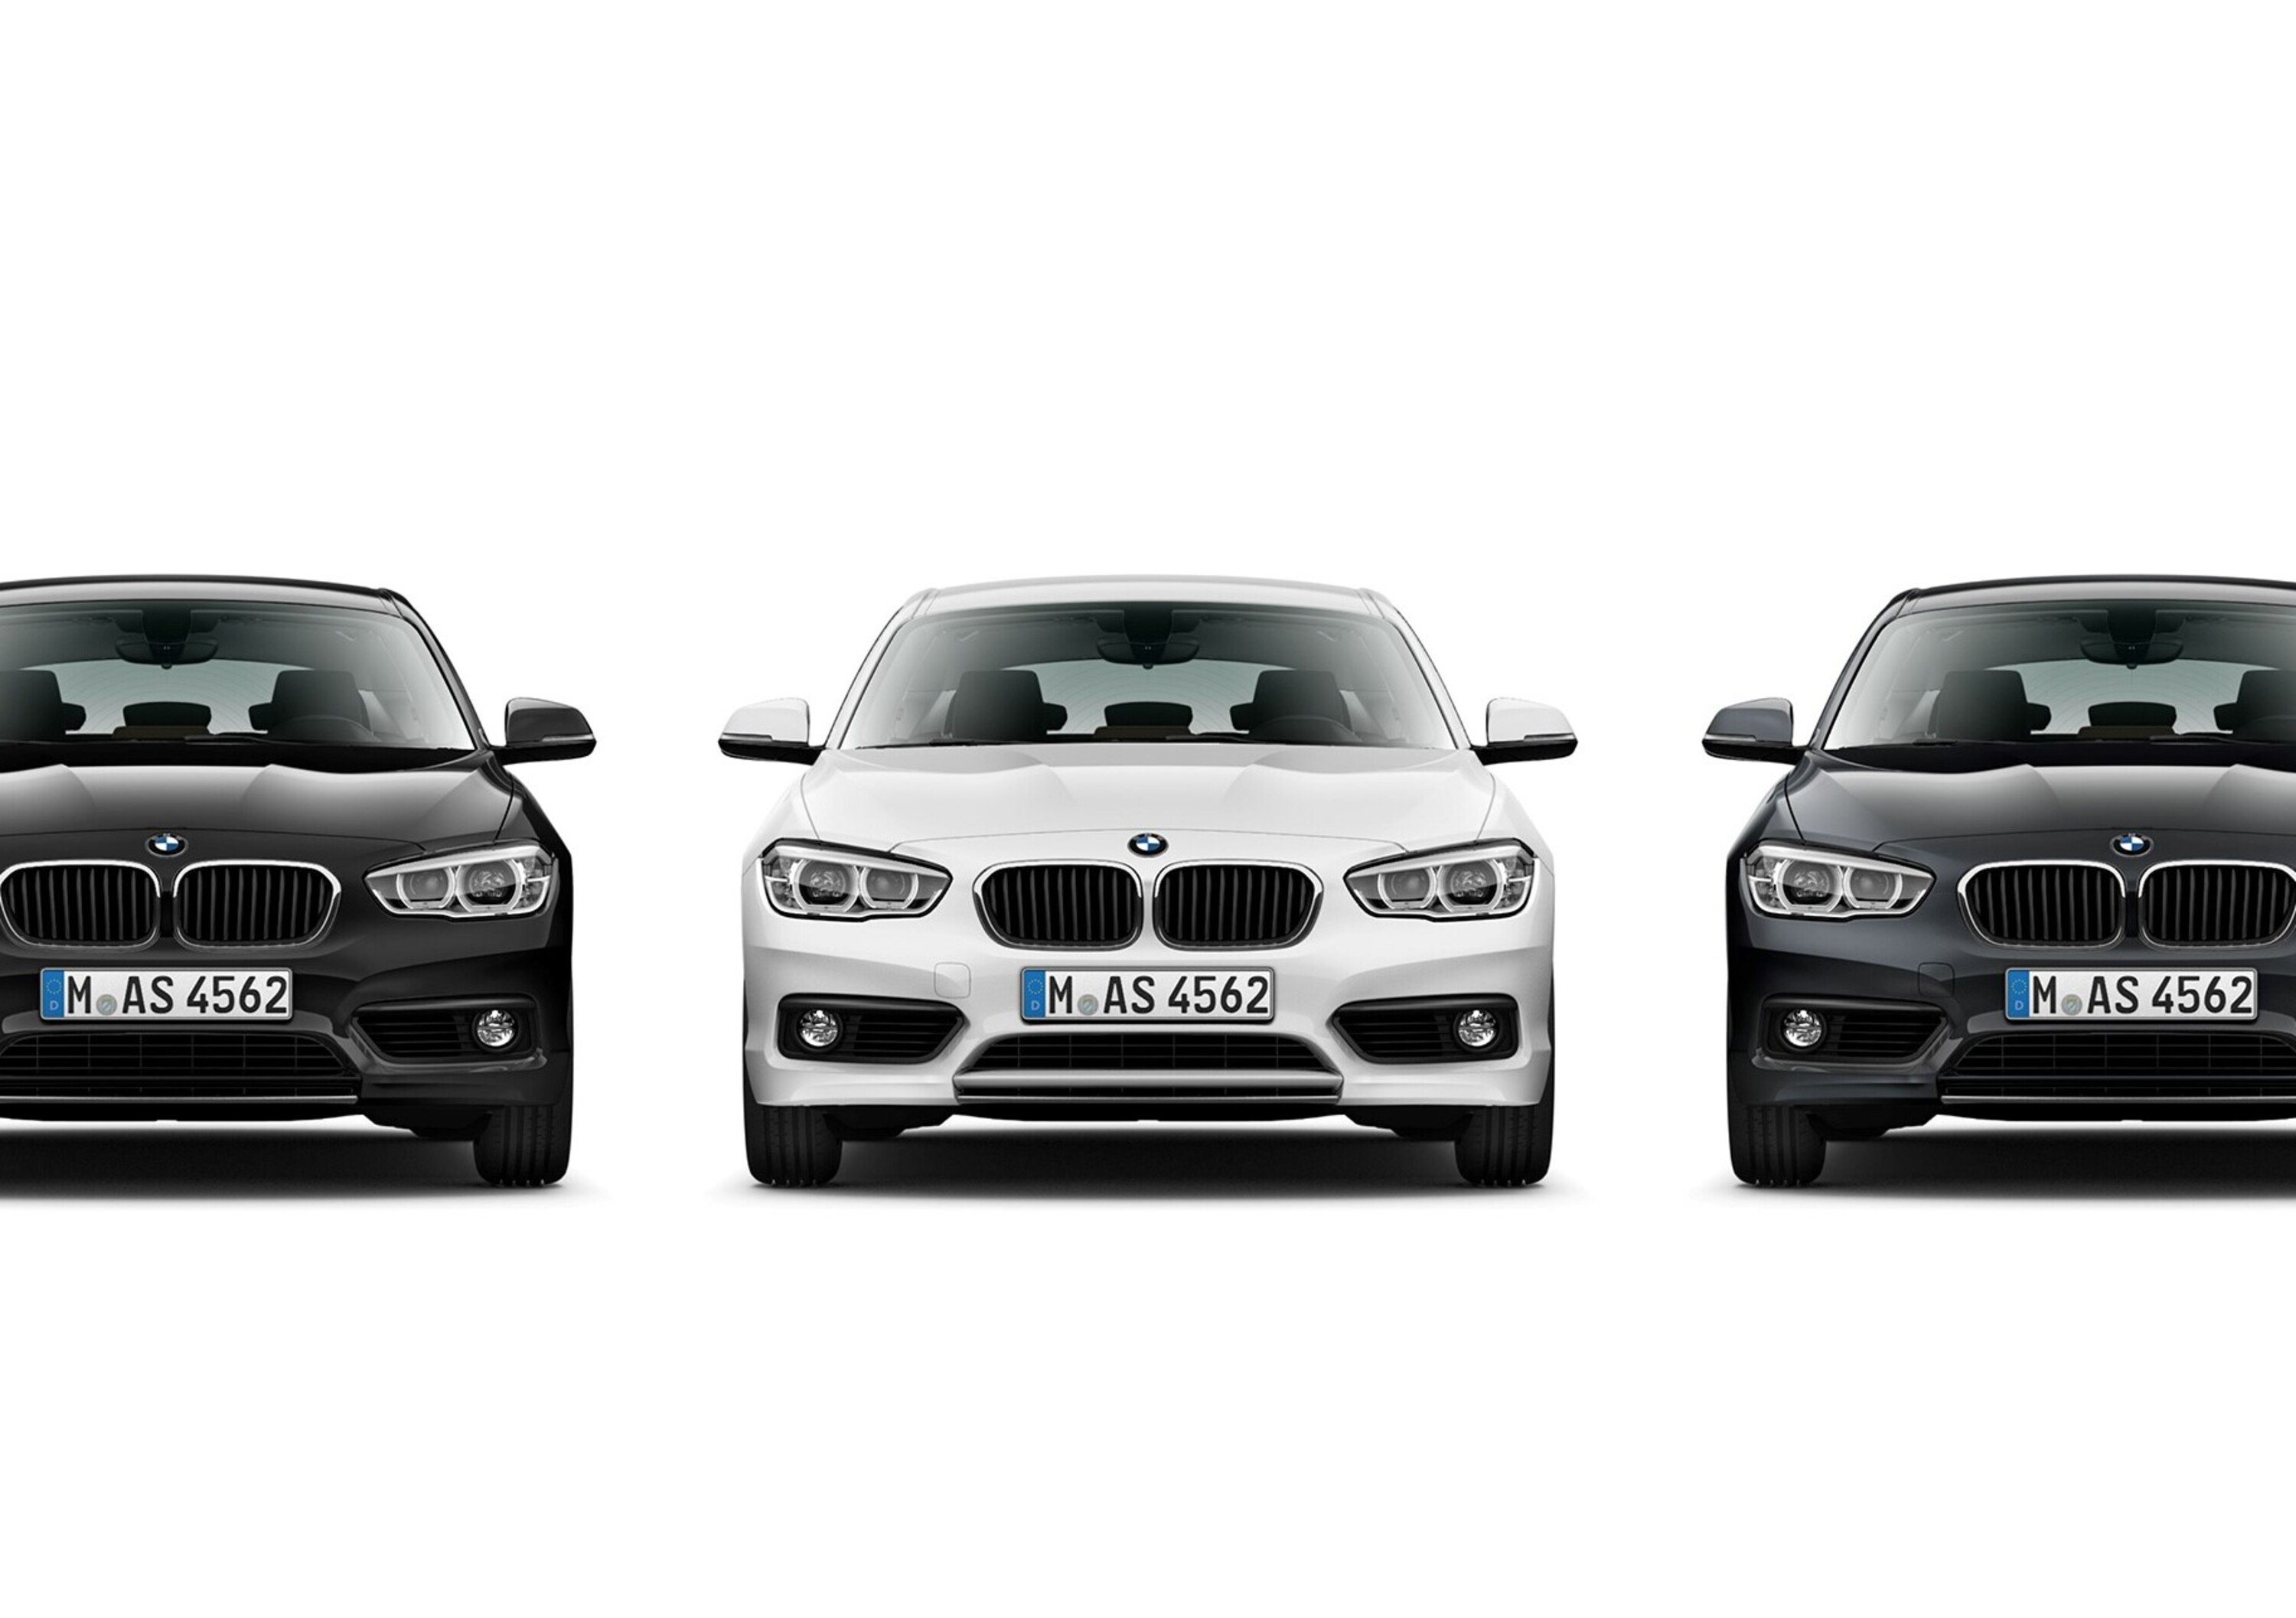 BMW Serie 1 Digital Edition, disponibile solo per 100 ore